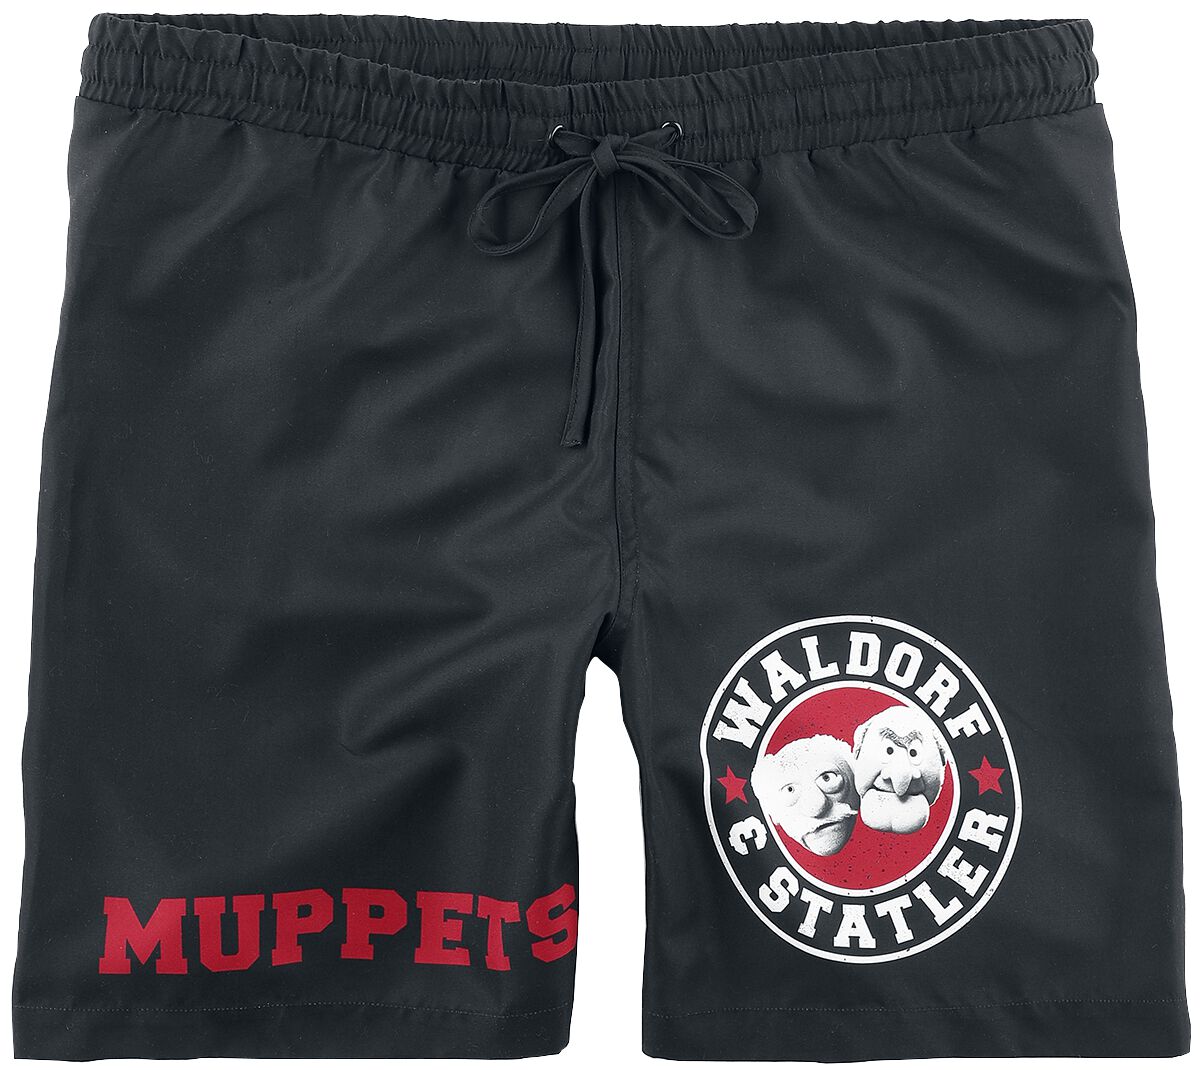 Die Muppets Badeshort - Waldorf & Statler - Old School - S bis XL - für Männer - Größe L - schwarz  - EMP exklusives Merchandise!